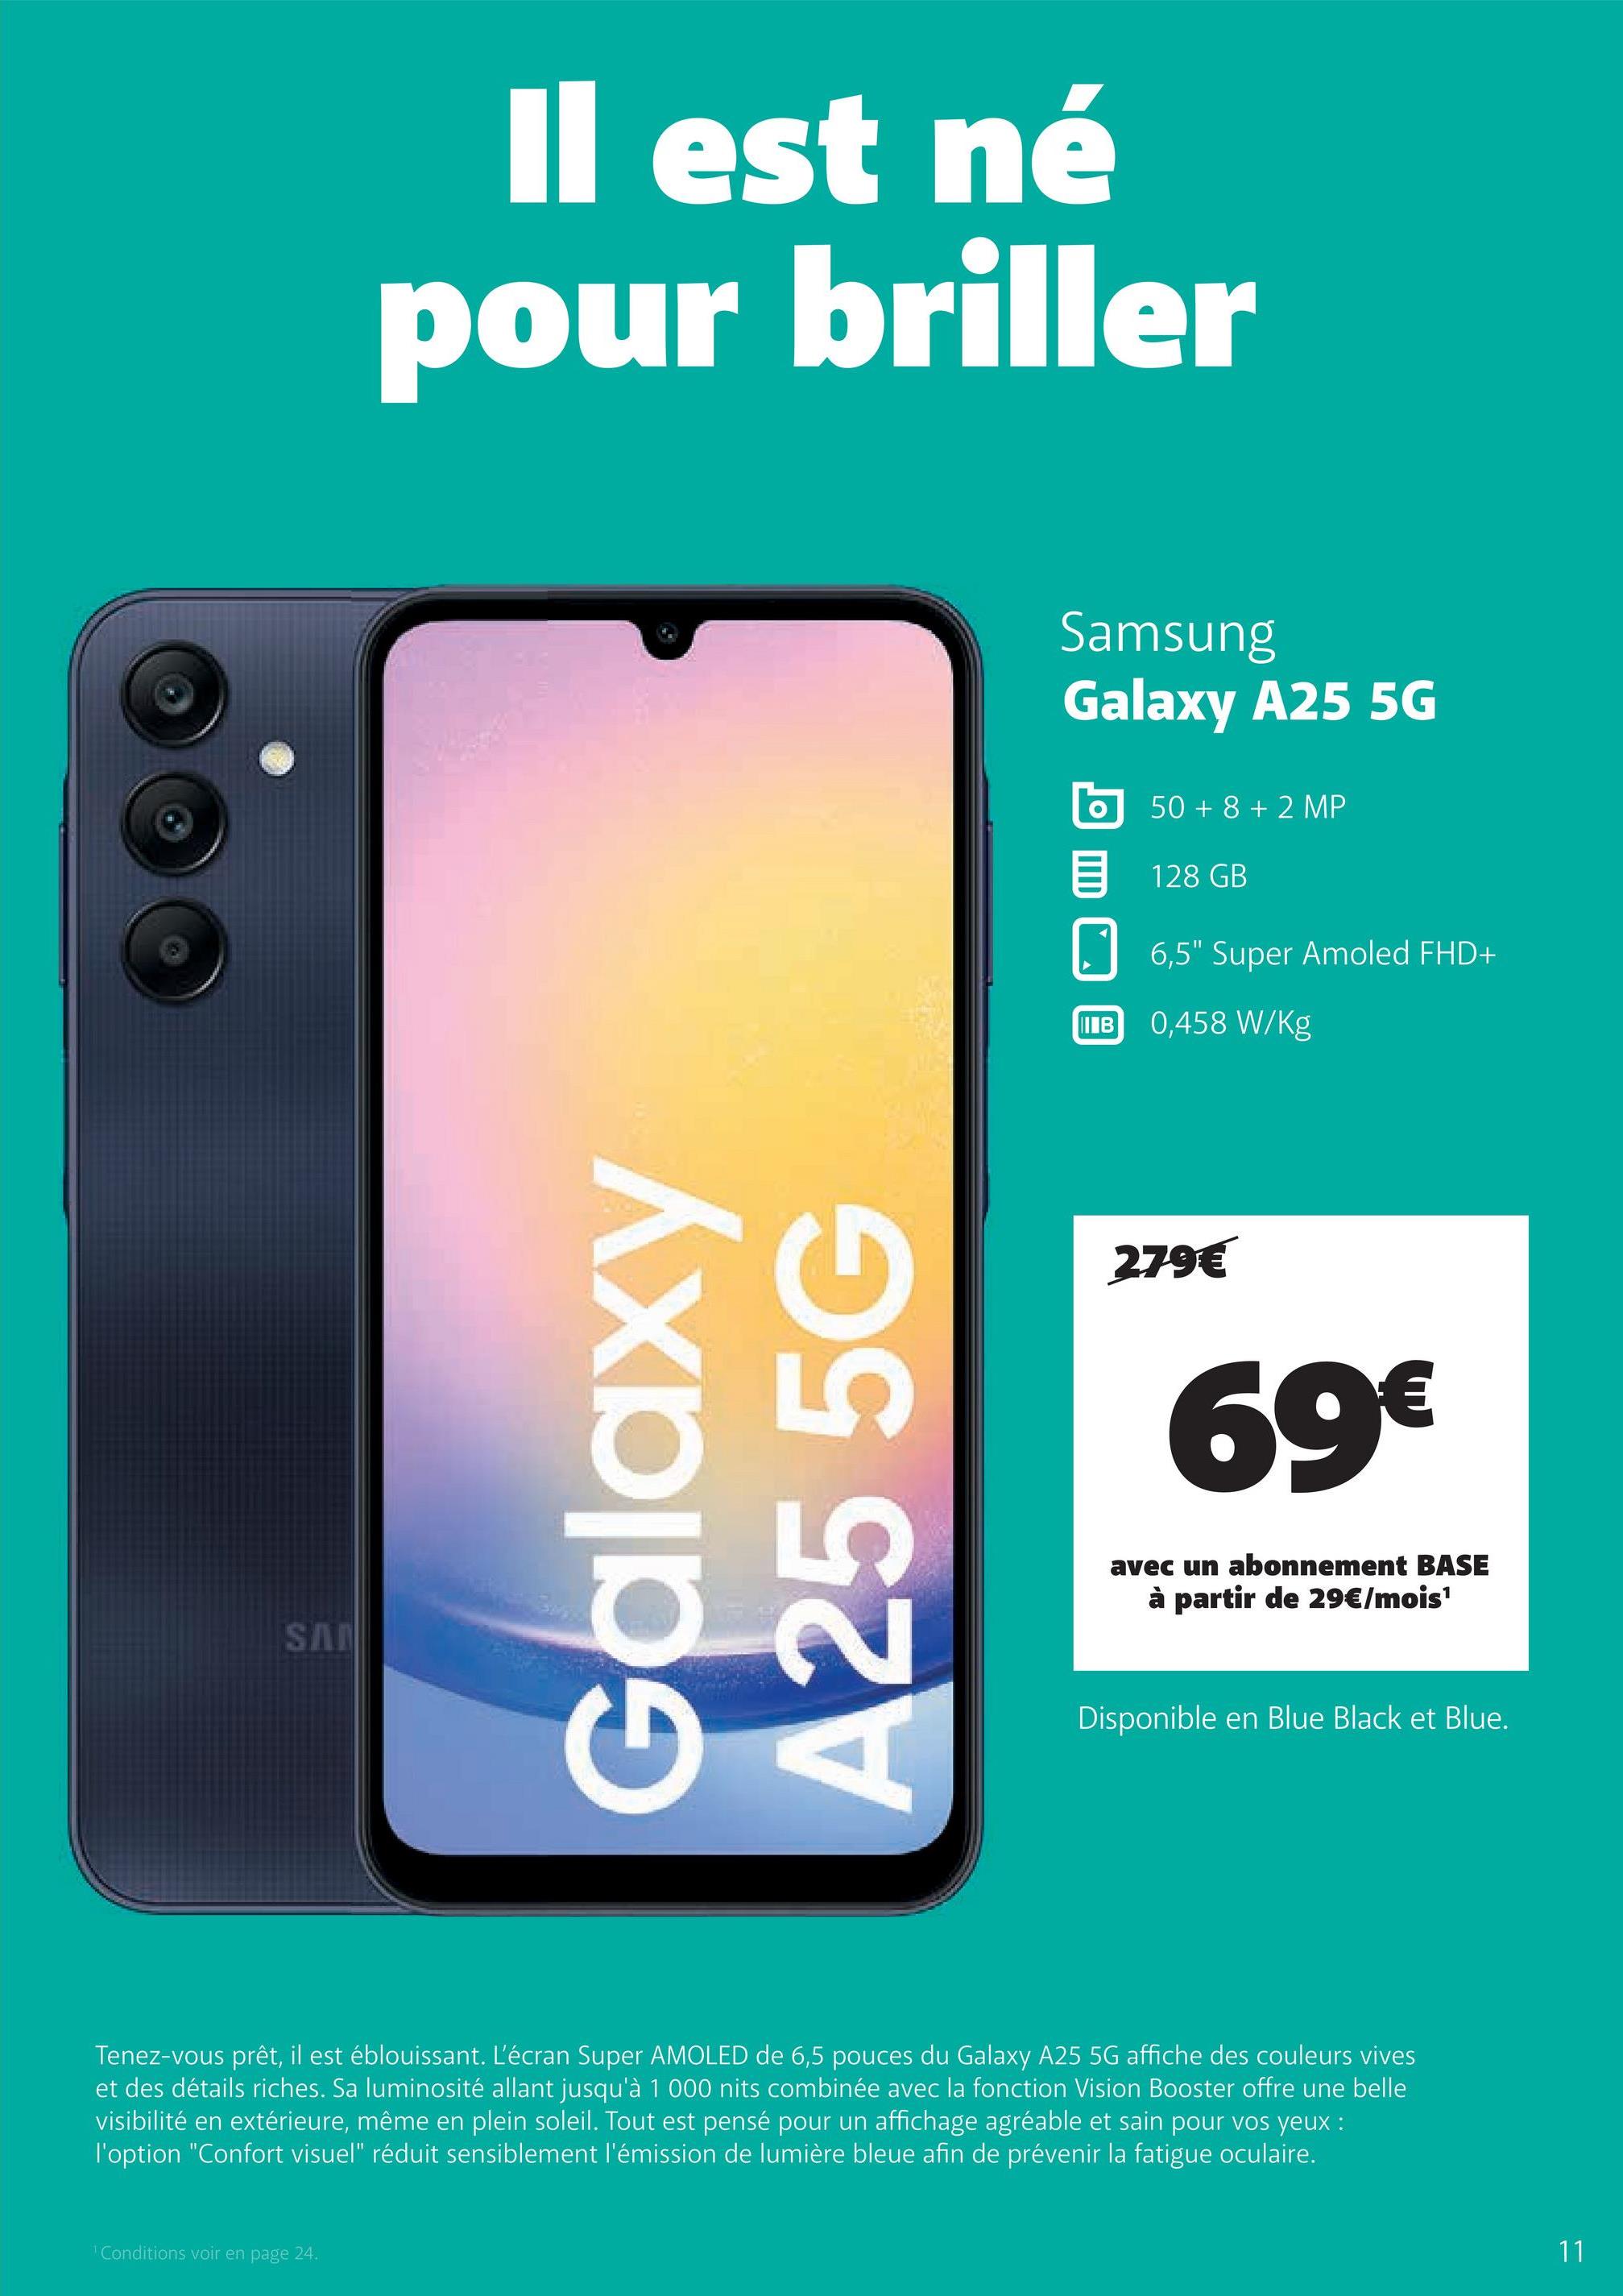 SA
Il est né
pour briller
Galaxy
A255G
Samsung
Galaxy A25 5G
50+8+2 MP
目 128 GB
☐ 6,5" Super Amoled FHD+
IB
0,458 W/Kg
279€
69€
avec un abonnement BASE
à partir de 29€/mois¹
Disponible en Blue Black et Blue.
Tenez-vous prêt, il est éblouissant. L'écran Super AMOLED de 6,5 pouces du Galaxy A25 5G affiche des couleurs vives
et des détails riches. Sa luminosité allant jusqu'à 1 000 nits combinée avec la fonction Vision Booster offre une belle
visibilité en extérieure, même en plein soleil. Tout est pensé pour un affichage agréable et sain pour vos yeux :
l'option "Confort visuel" réduit sensiblement l'émission de lumière bleue afin de prévenir la fatigue oculaire.
Conditions voir en page 24.
11